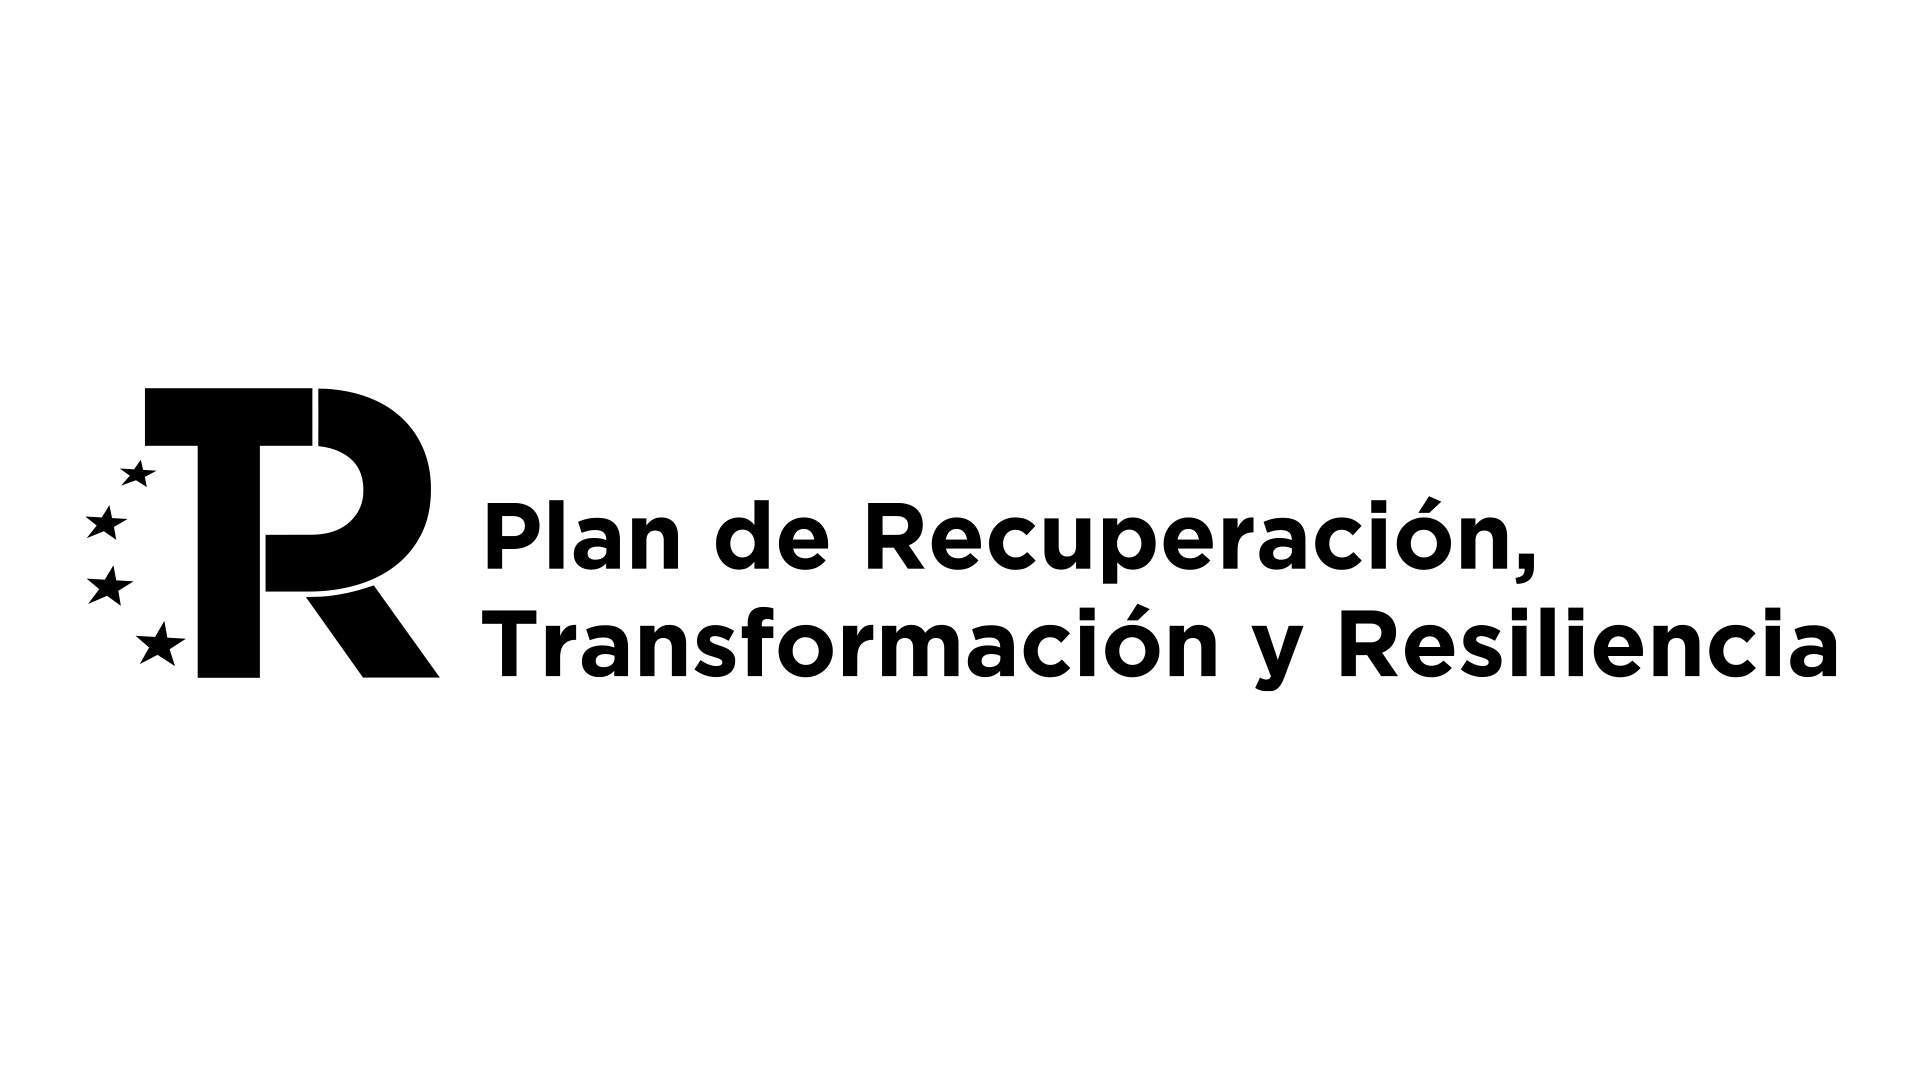 Logotipo Plan de Recuperacion, transformación y Resiliencia